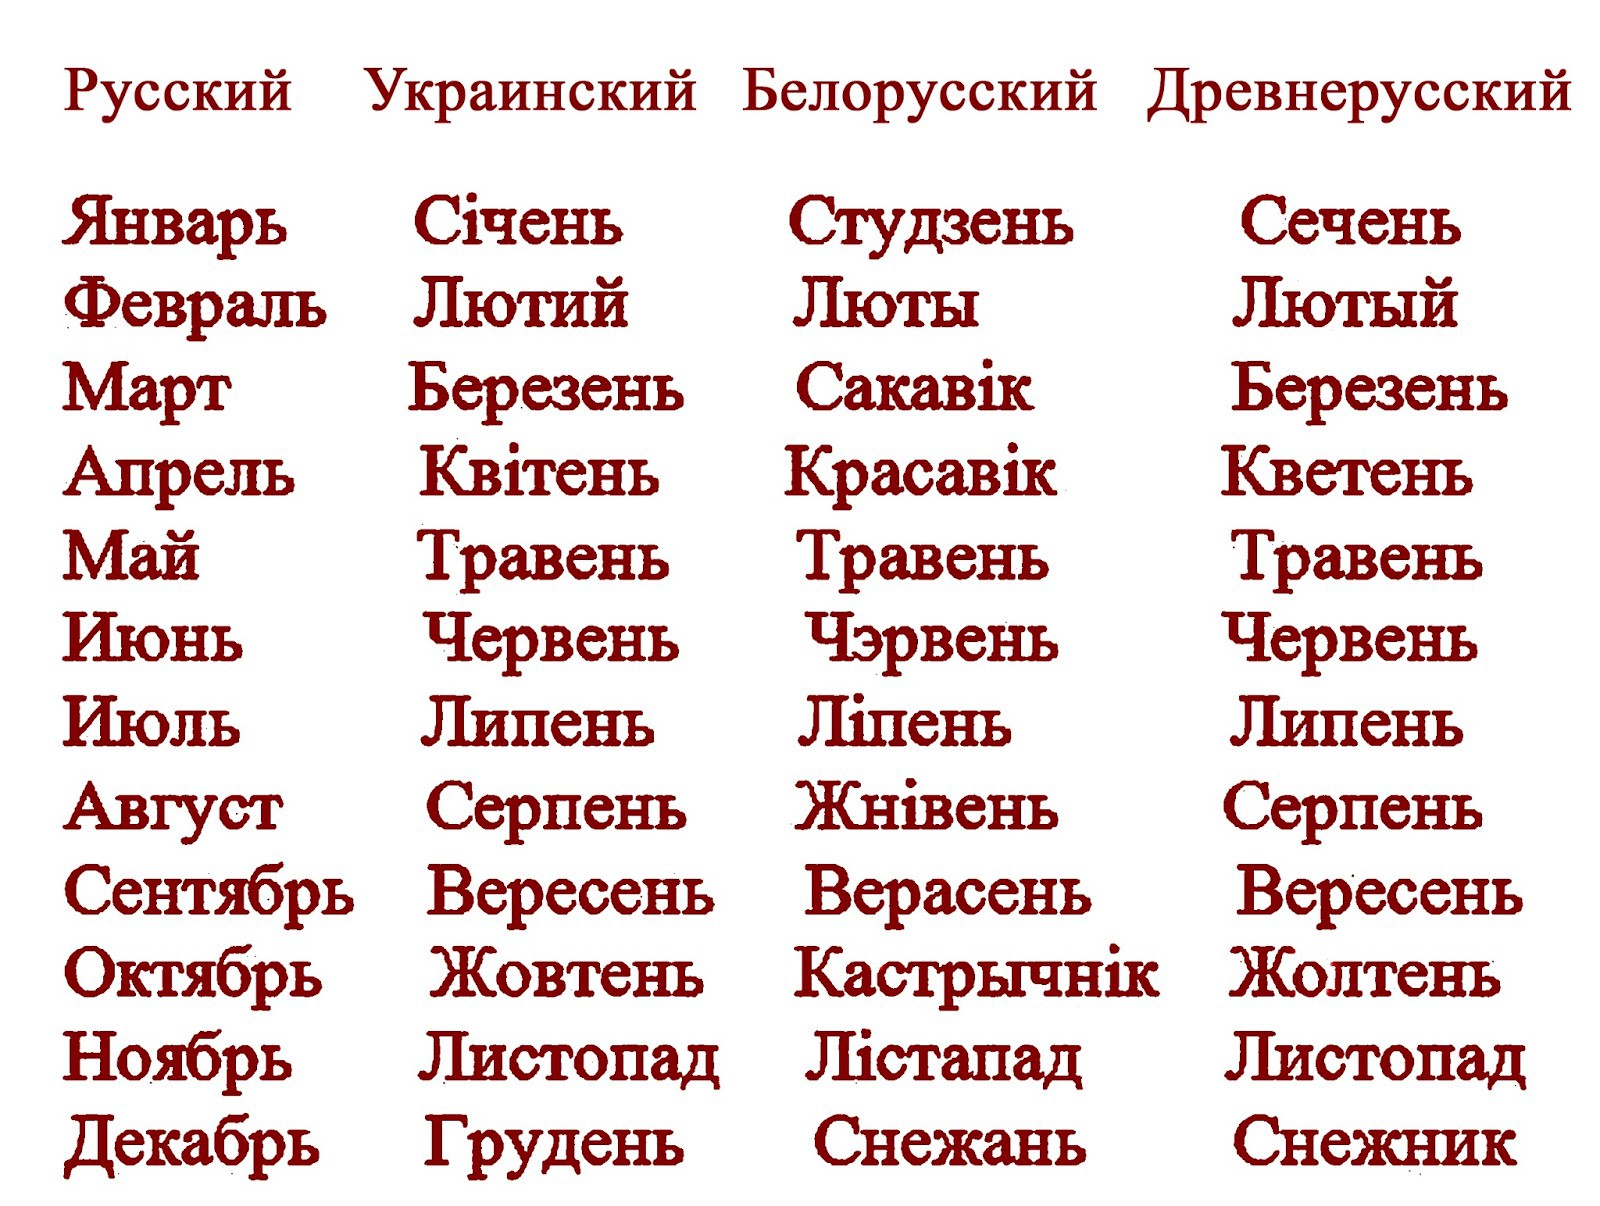 Название месяцев на украинском языке с переводом на русский